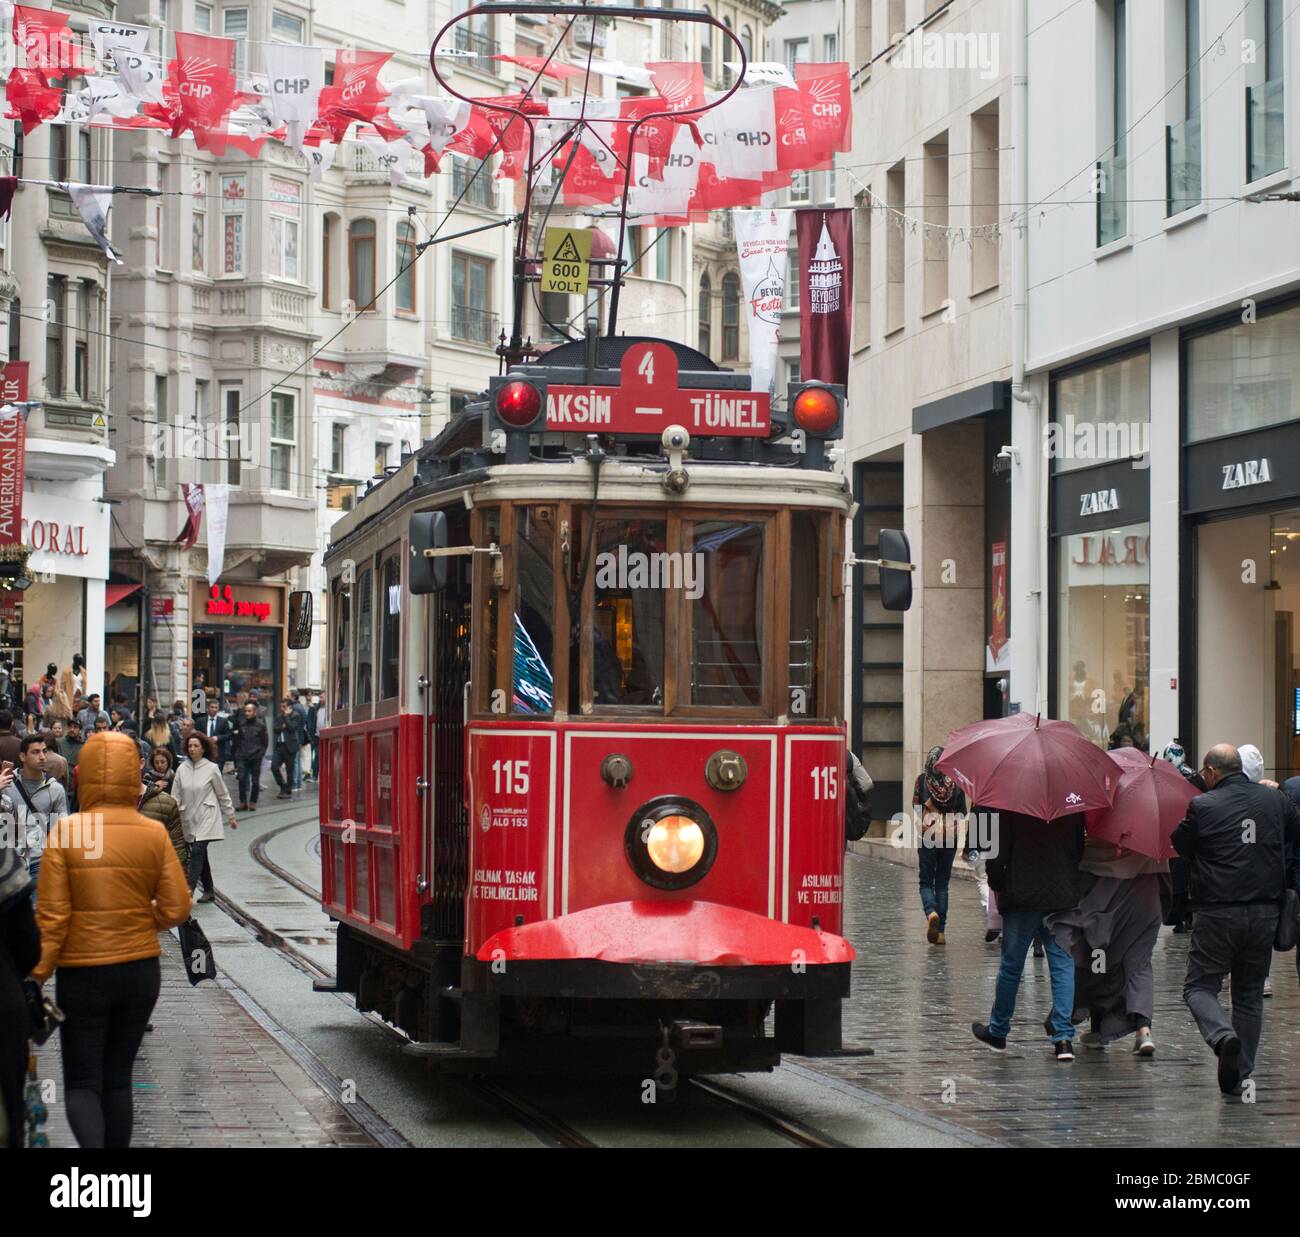 Tranvía nostálgico de Estambul, avenida Istiklal (línea Taksim-Tünel) Foto de stock